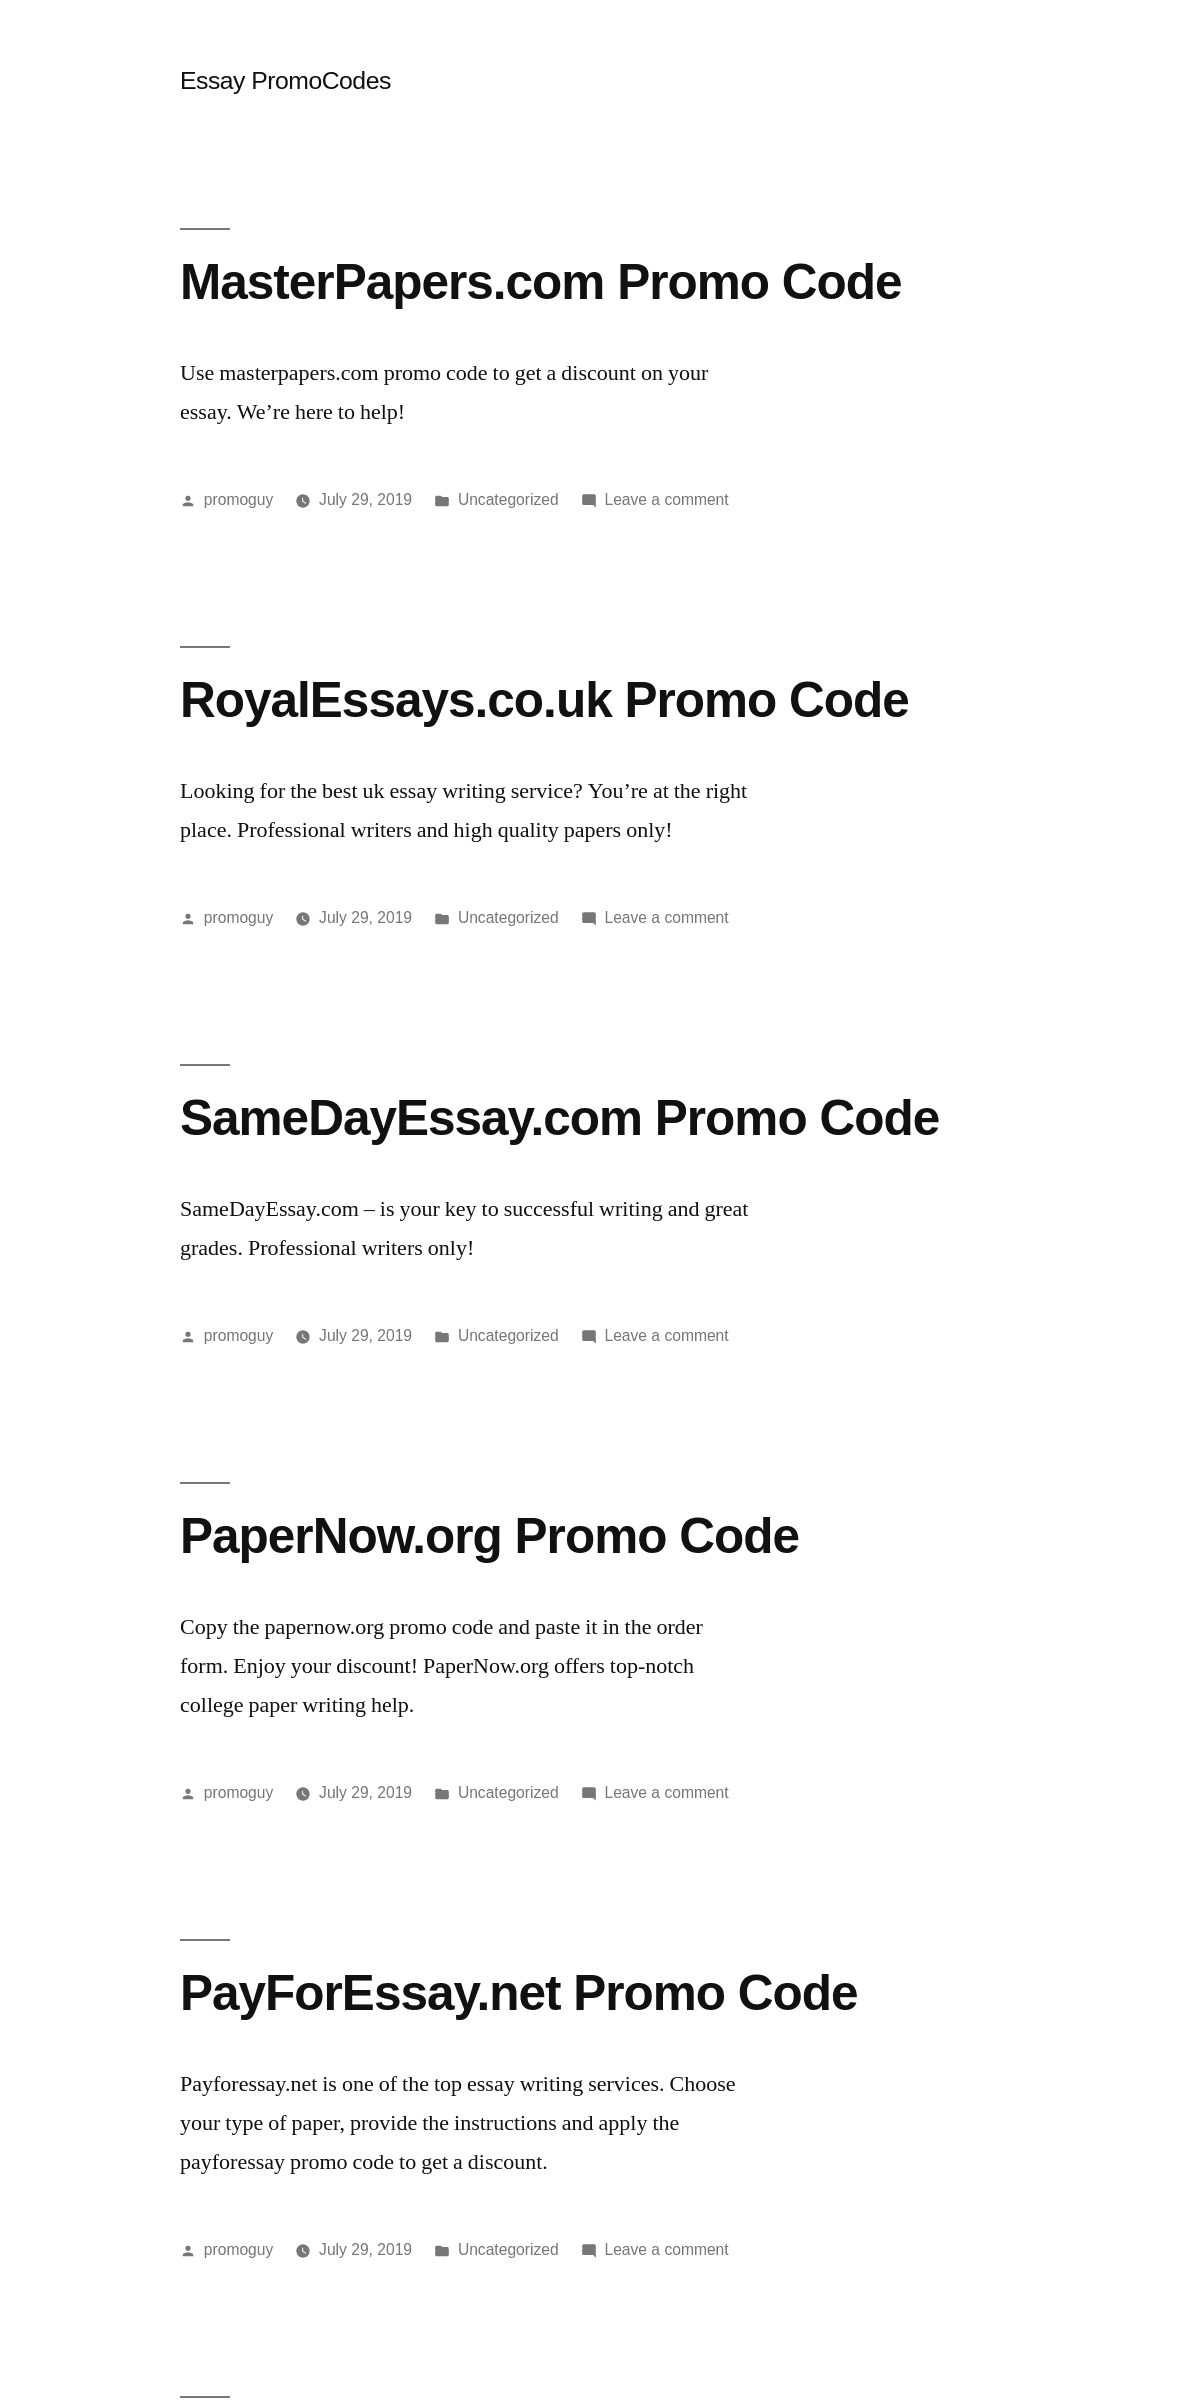 A complete backup of essaypromocodes.com